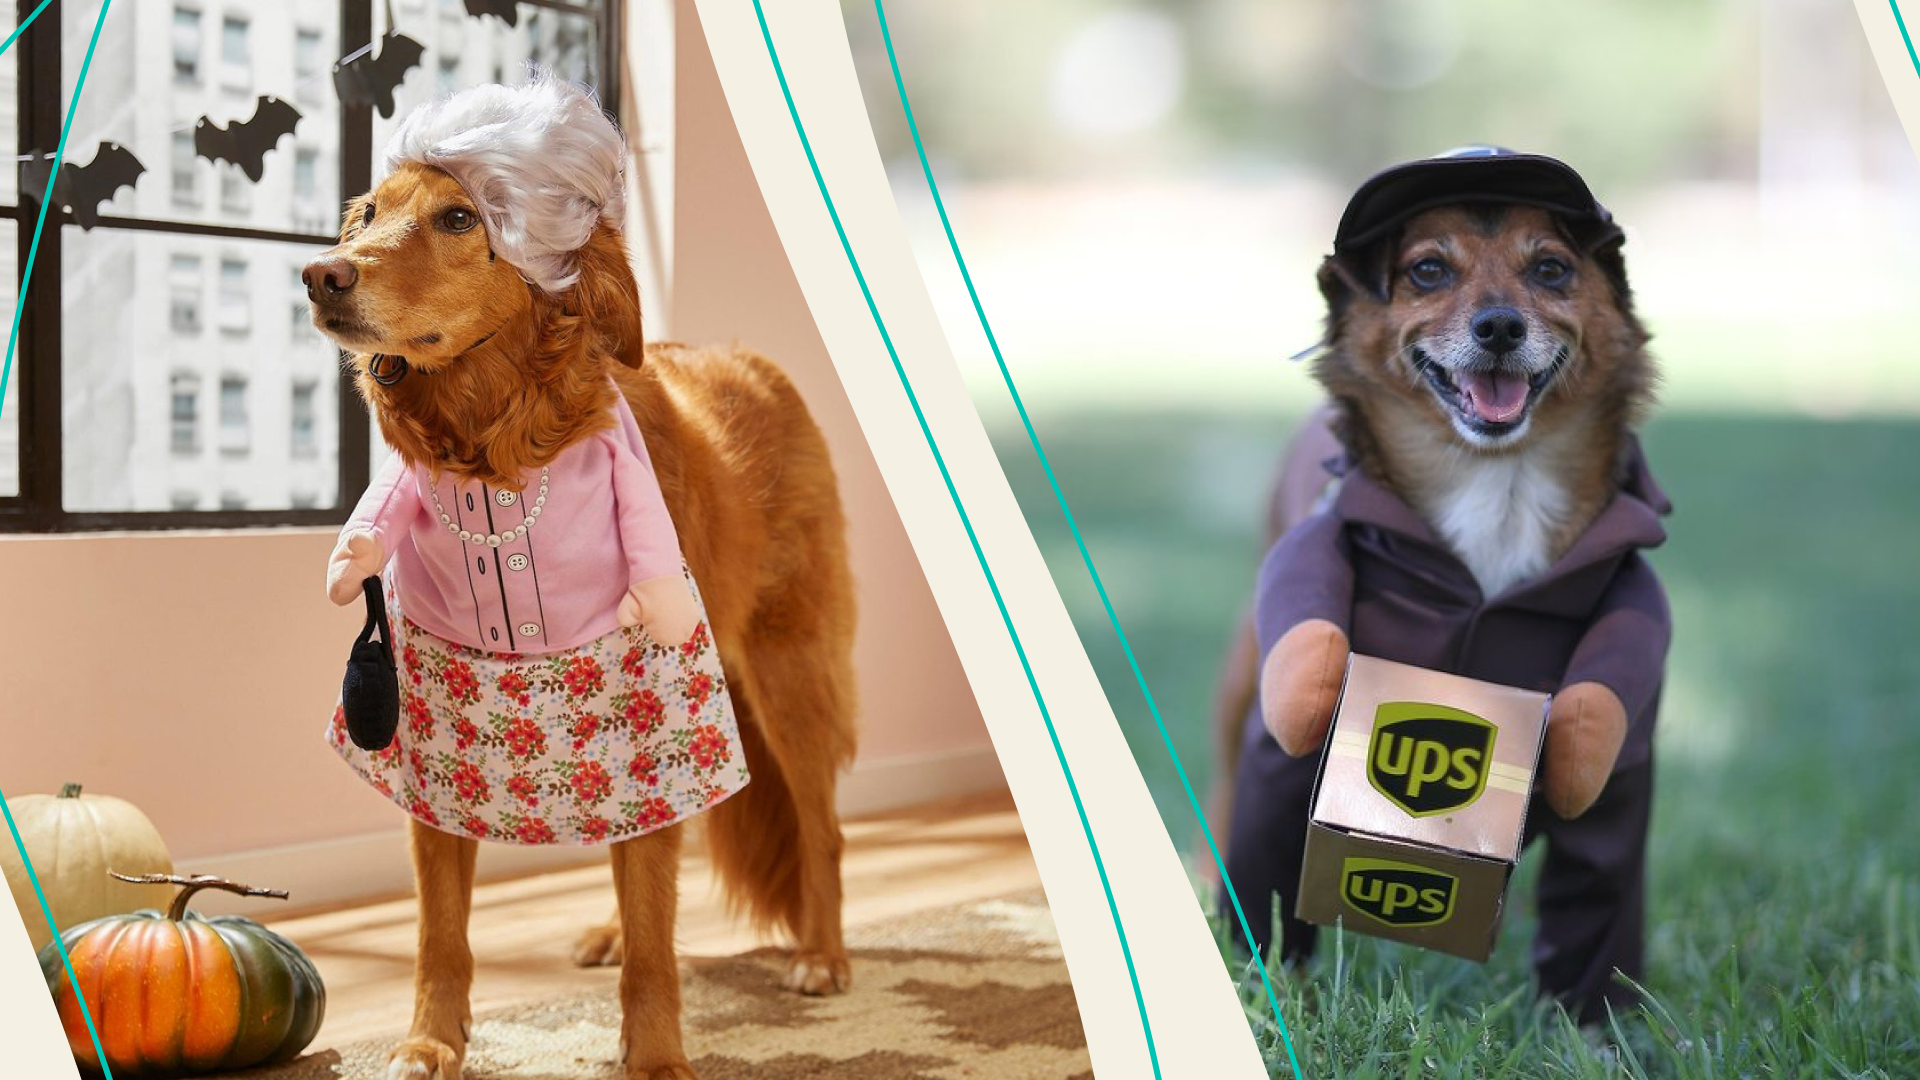 Granny dog costume and UPS dog costume 